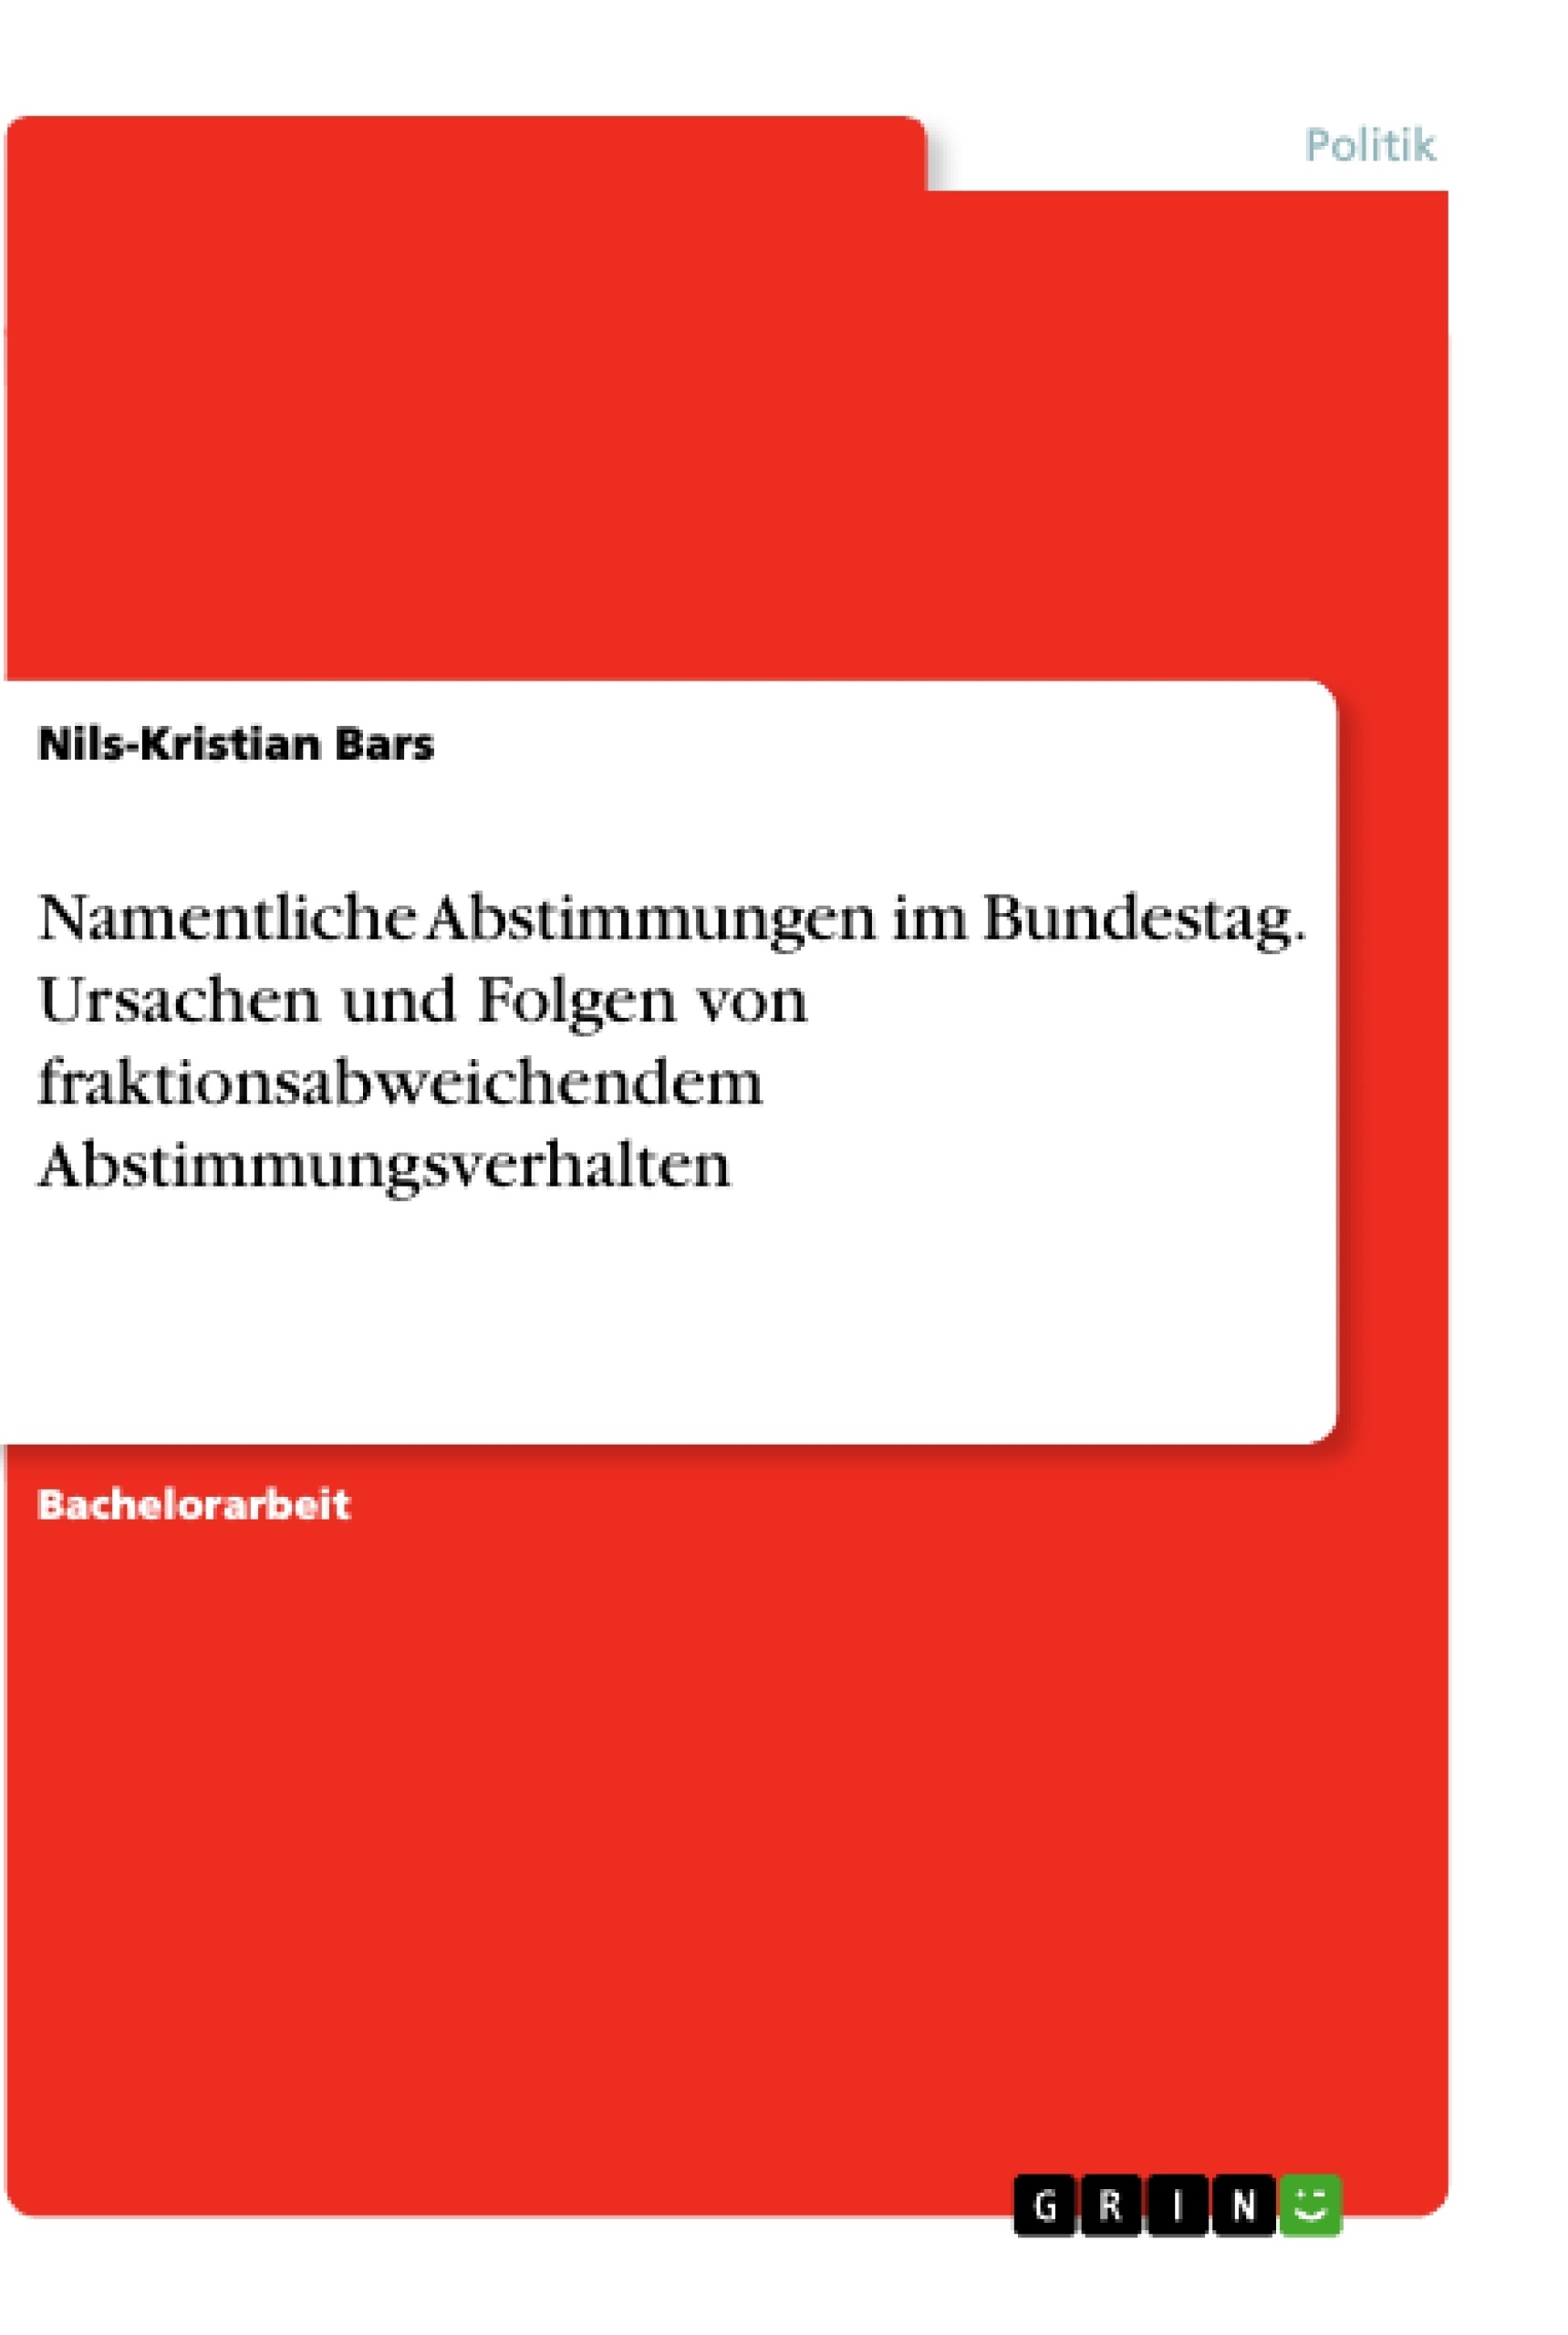 Titel: Namentliche Abstimmungen im Bundestag. Ursachen und Folgen von fraktionsabweichendem Abstimmungsverhalten